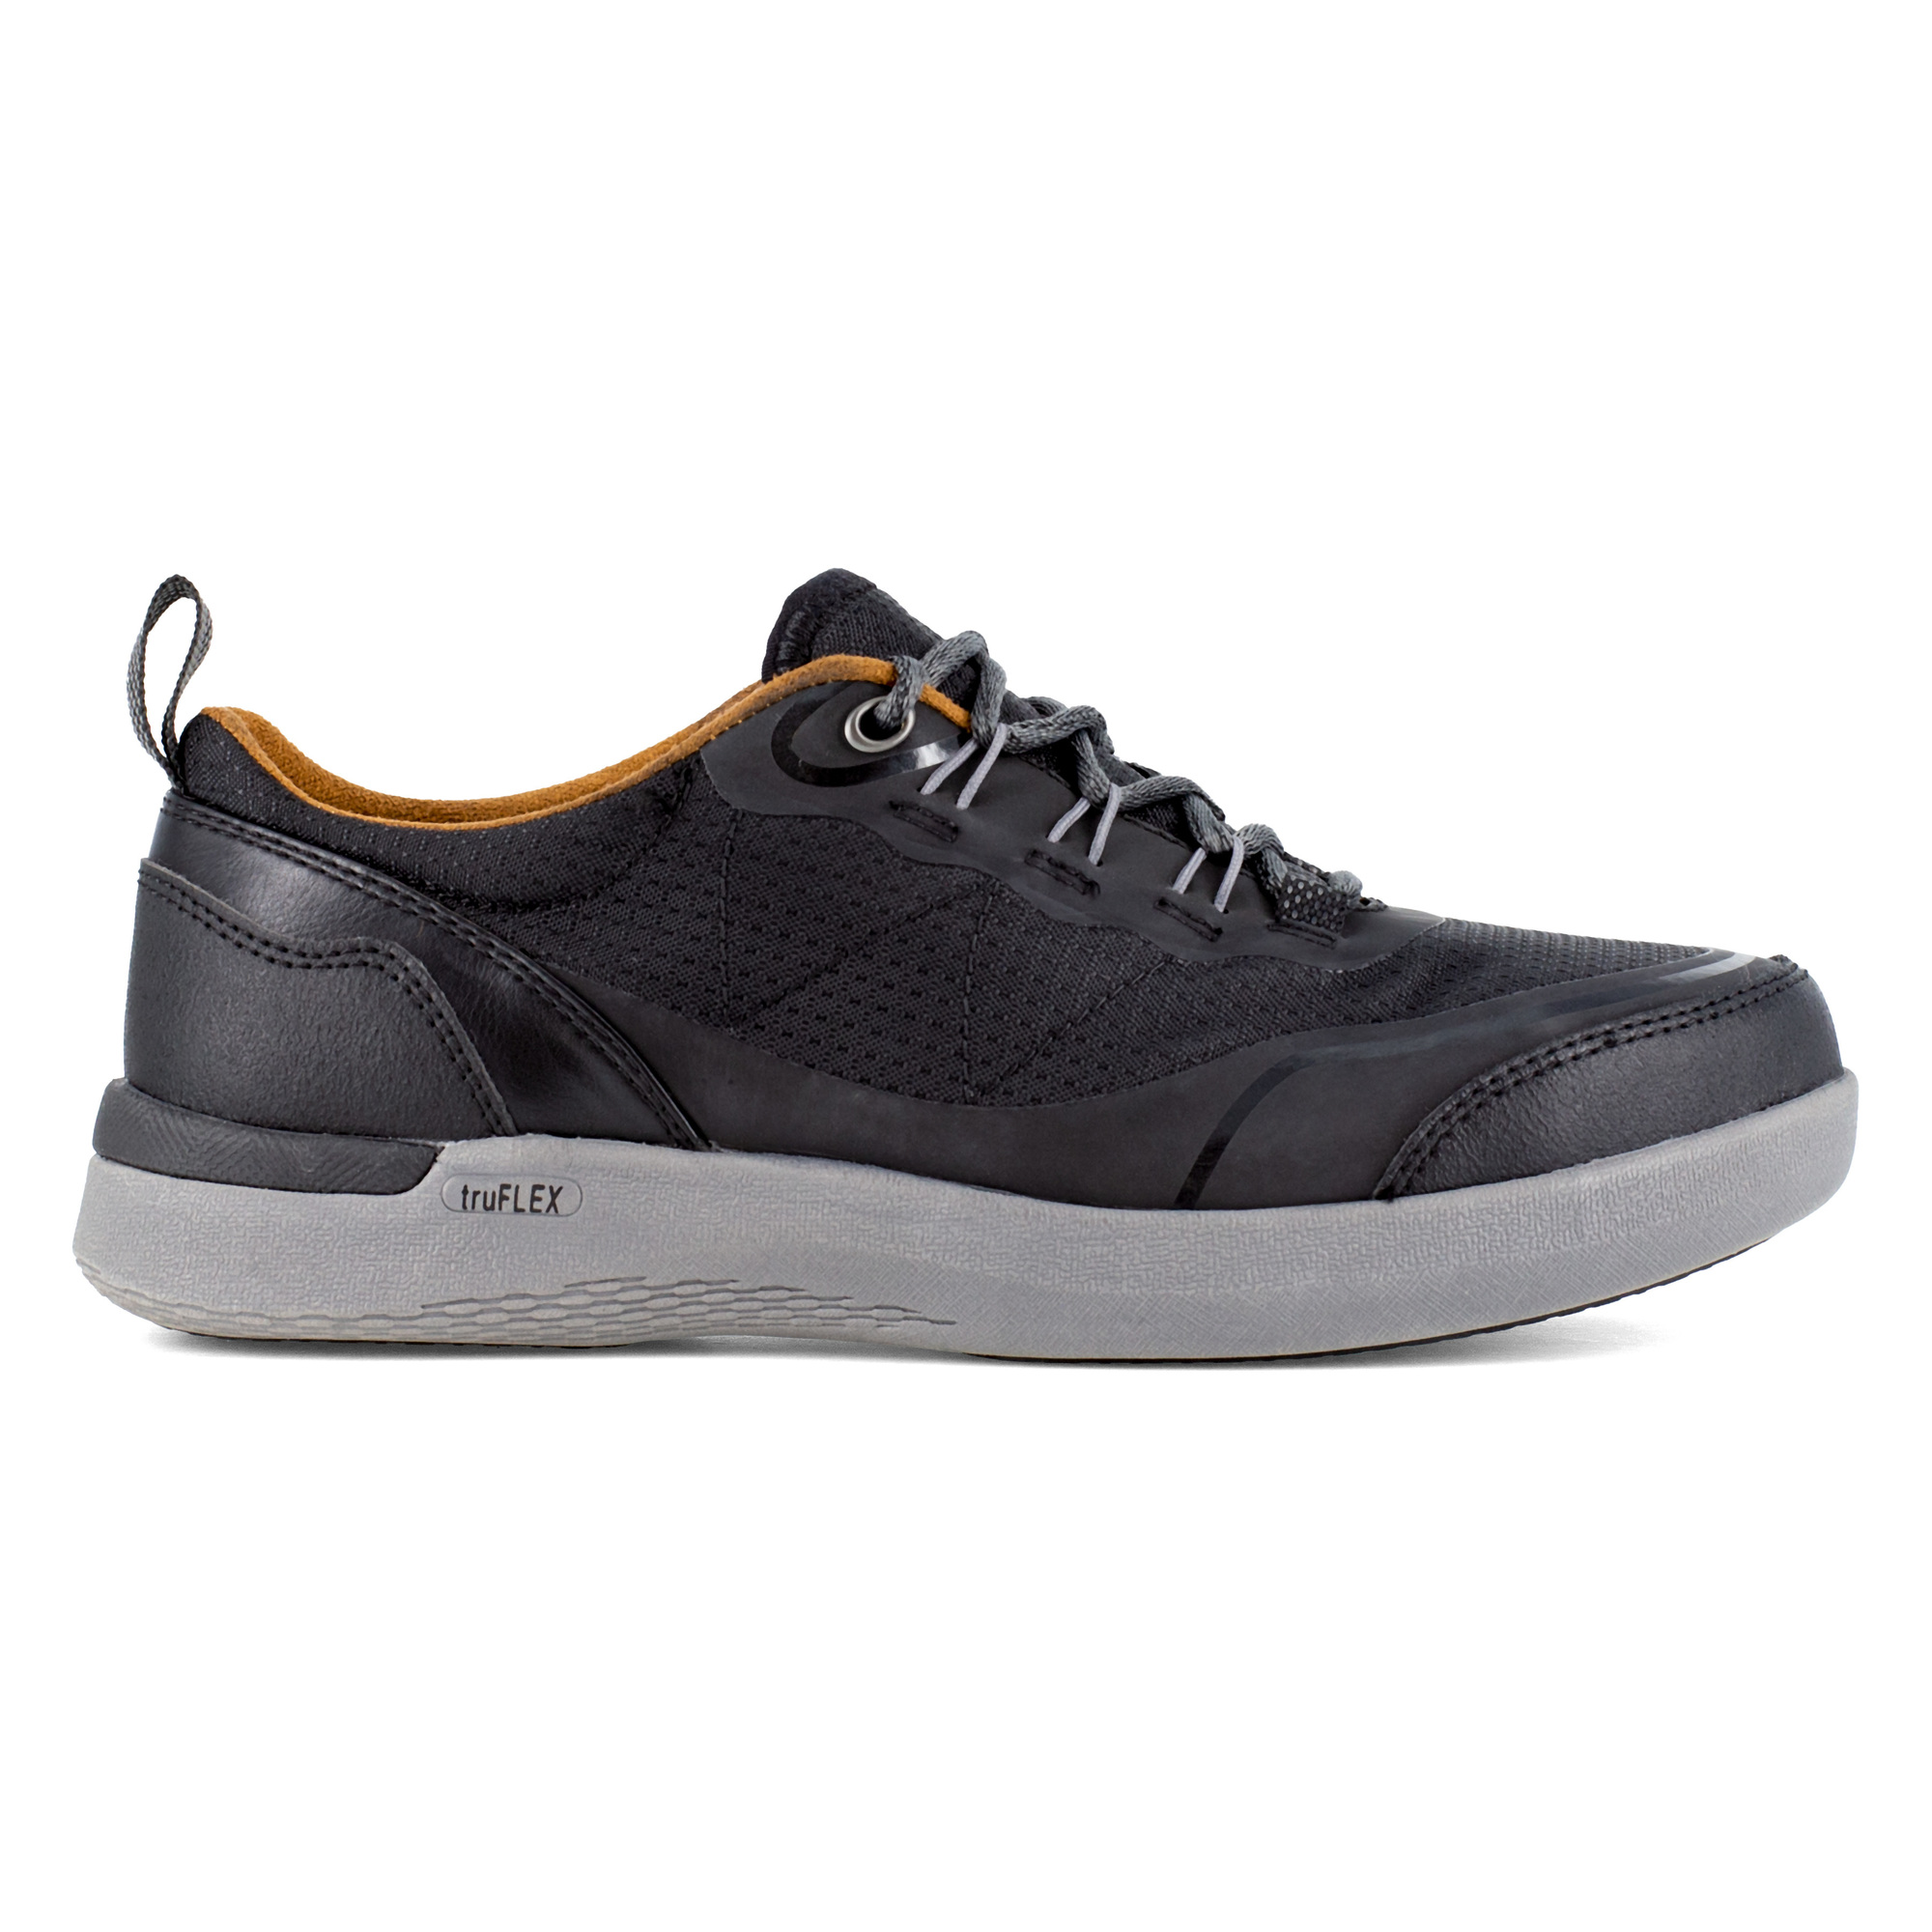 Rockport Works, Work Sneaker, Size 6 1/2, Width Medium, Color Black, Model RK687